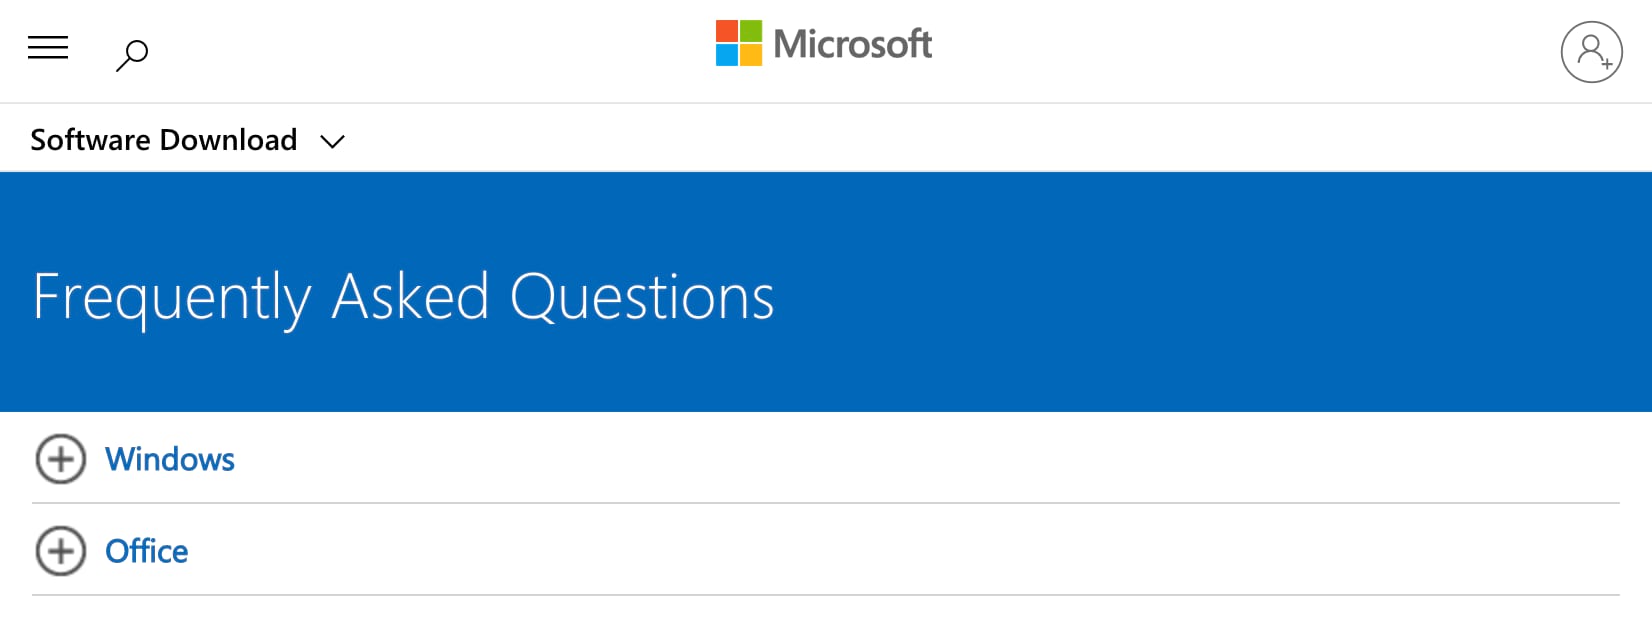 Microsoft FAQ